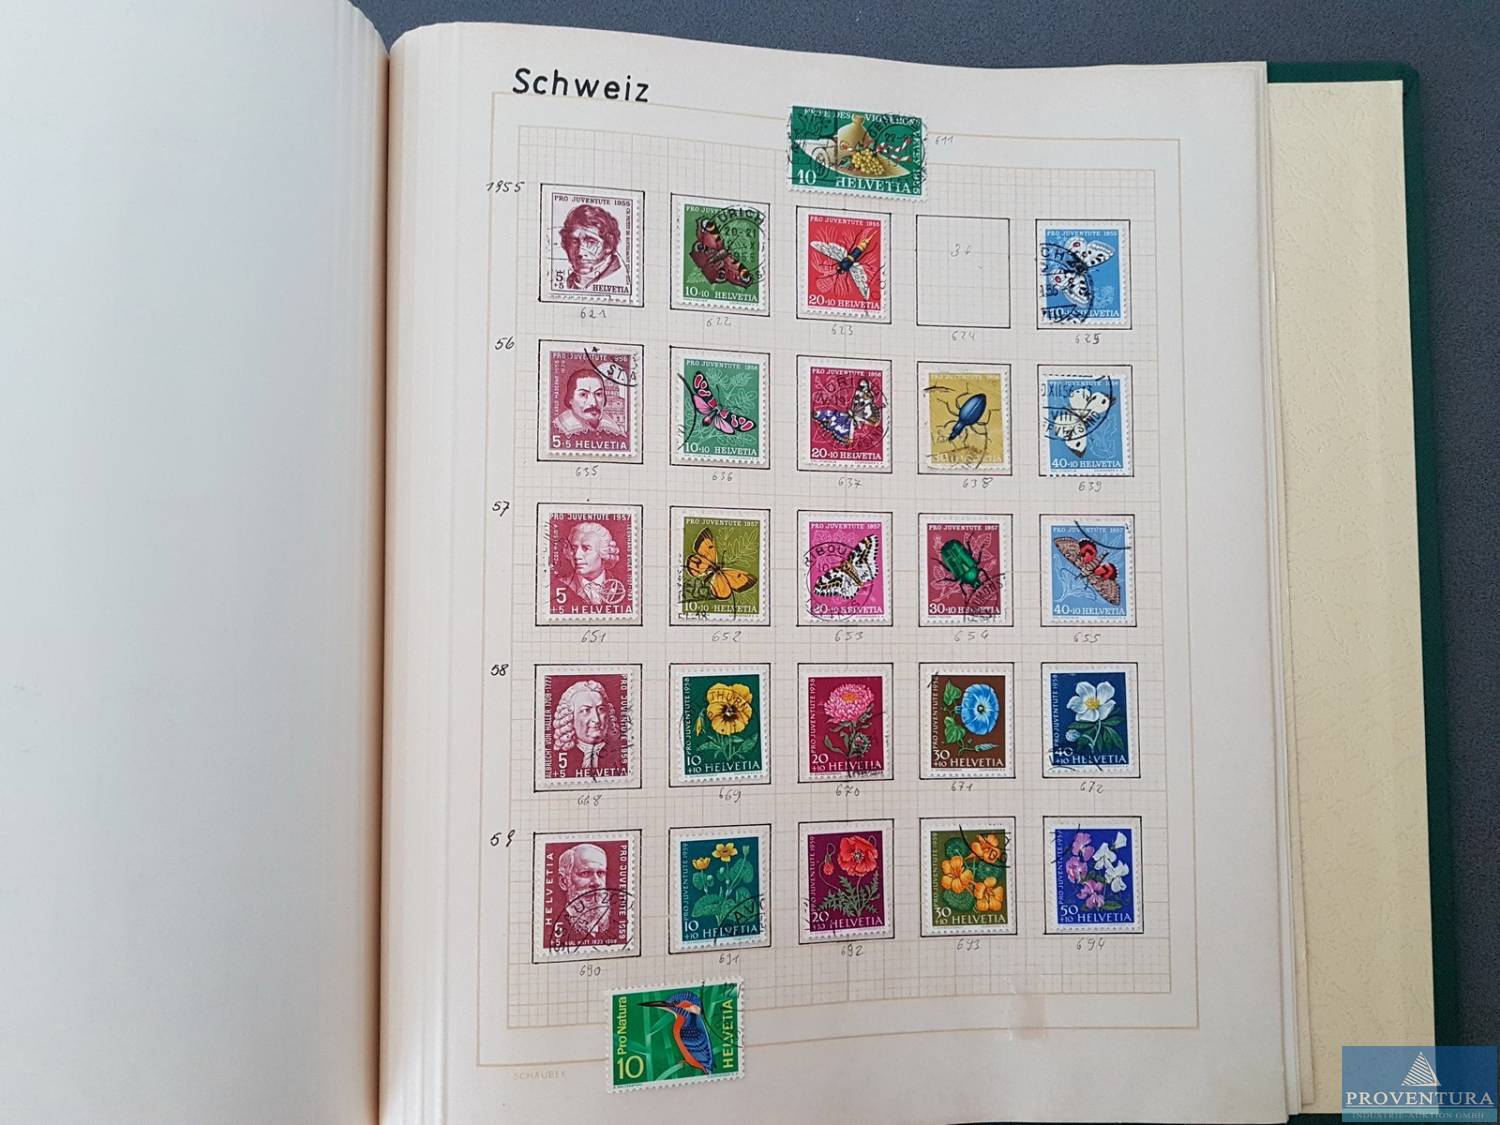 Versteigerung: ca. 81 Alben Briefmarken ETBs Blöcke Jahressammlungen BRD, DDR, Deutsches Reich, Altdeutsche Staaten, sauber sortiert